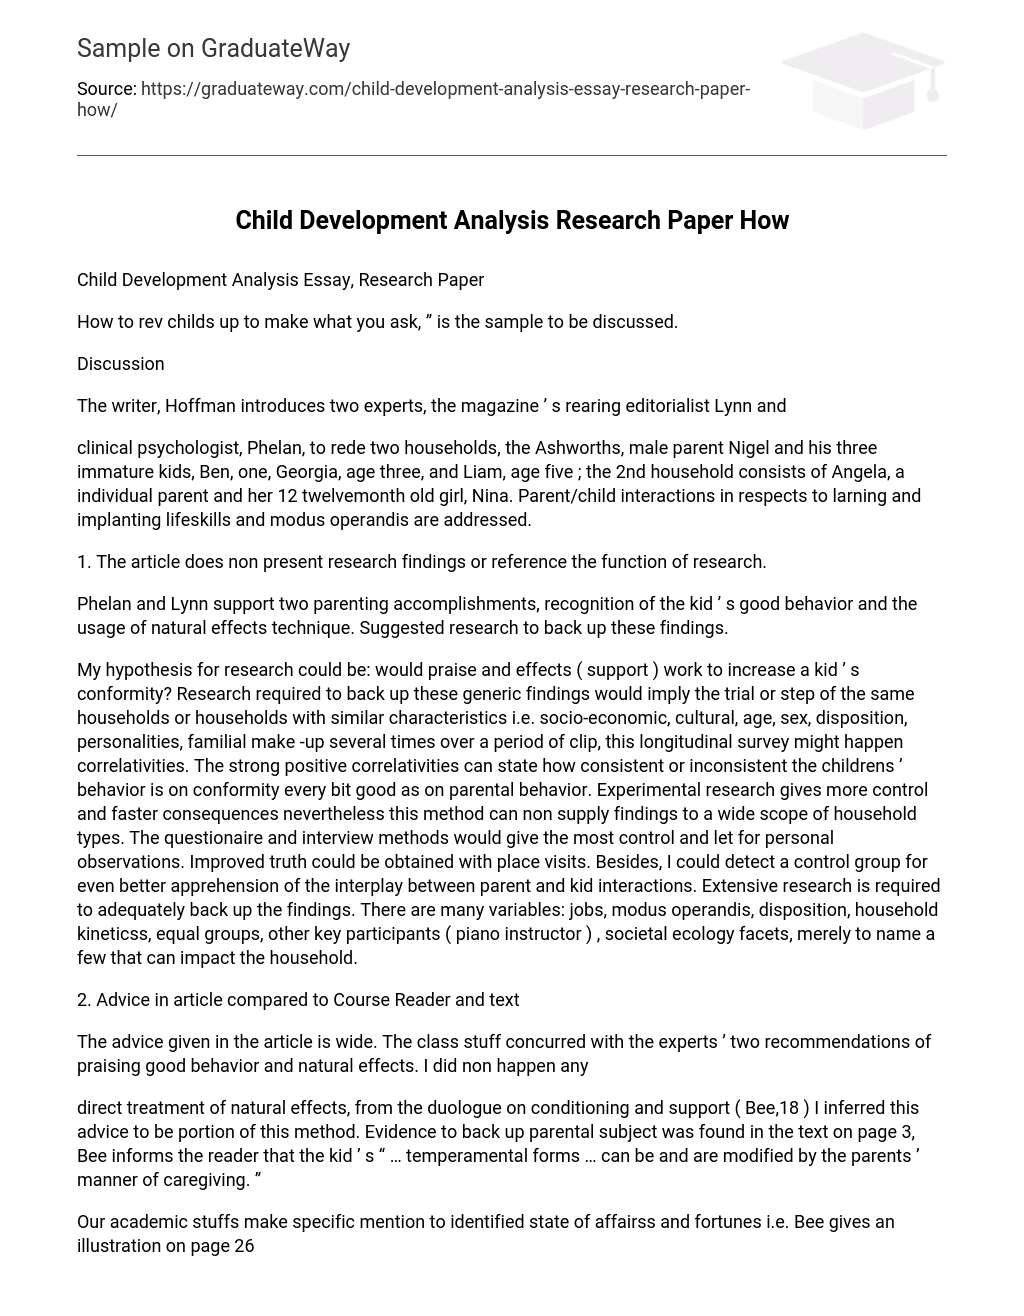 Child Development Analysis Essay